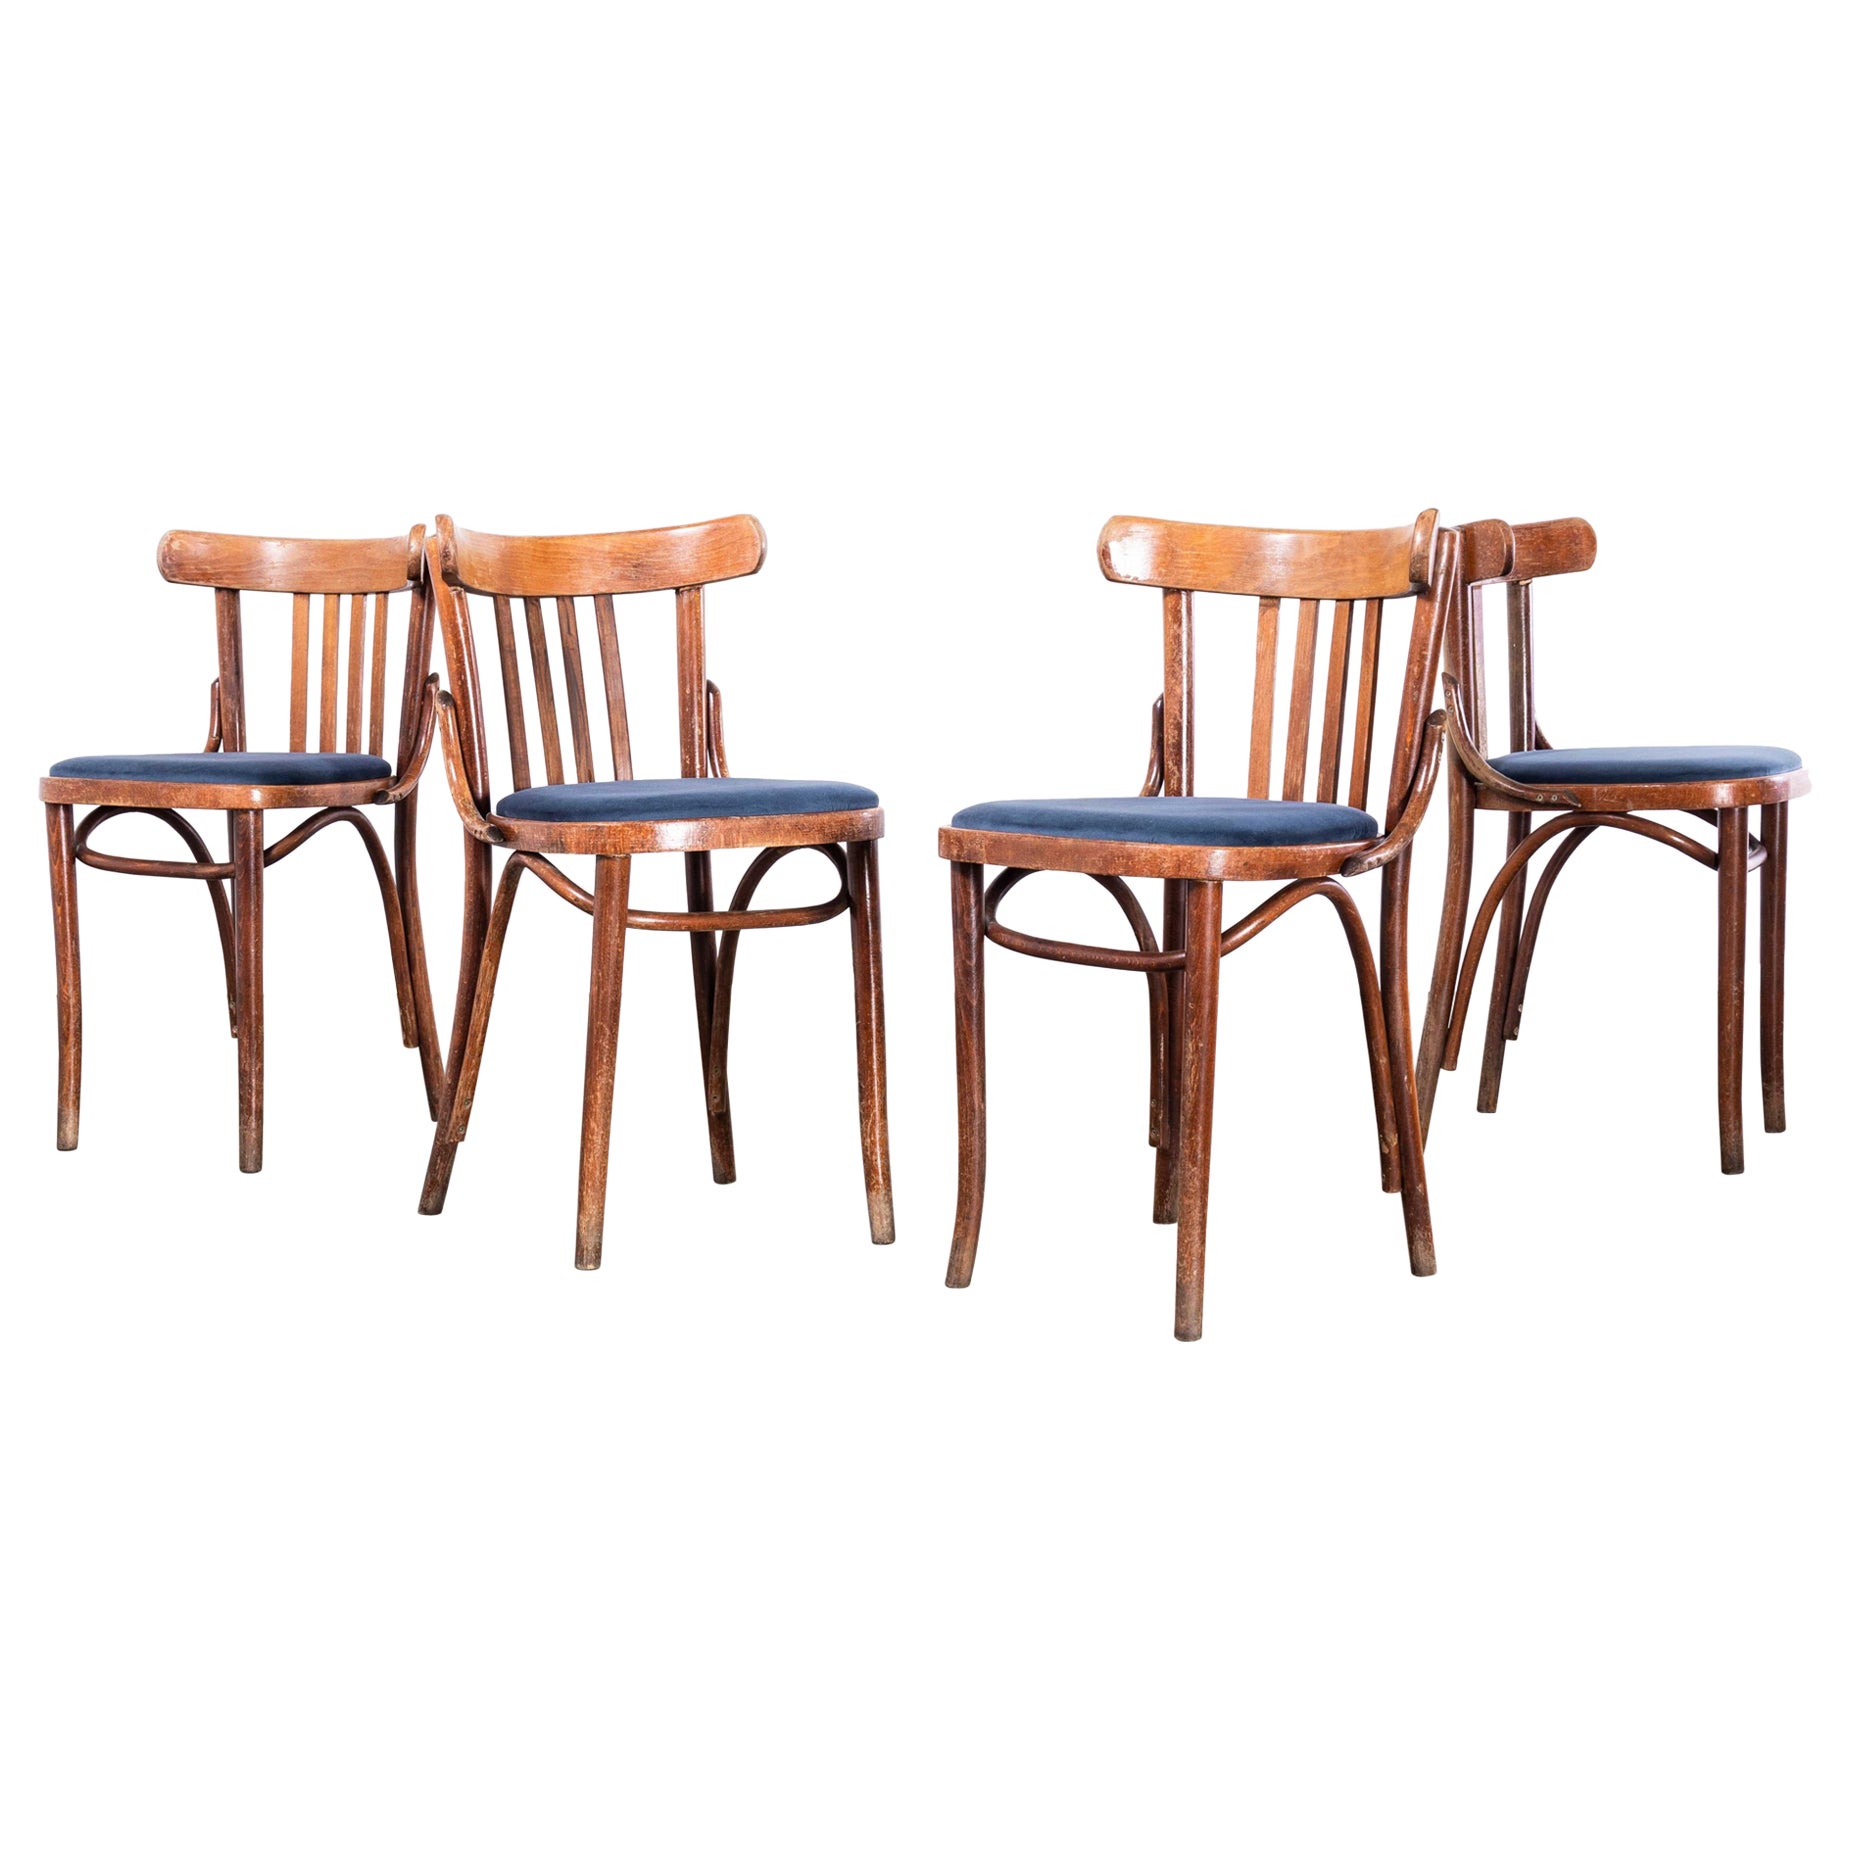 1960's Classic Bugholz gepolstert gepolsterte Bistro Stühle - Set von vier